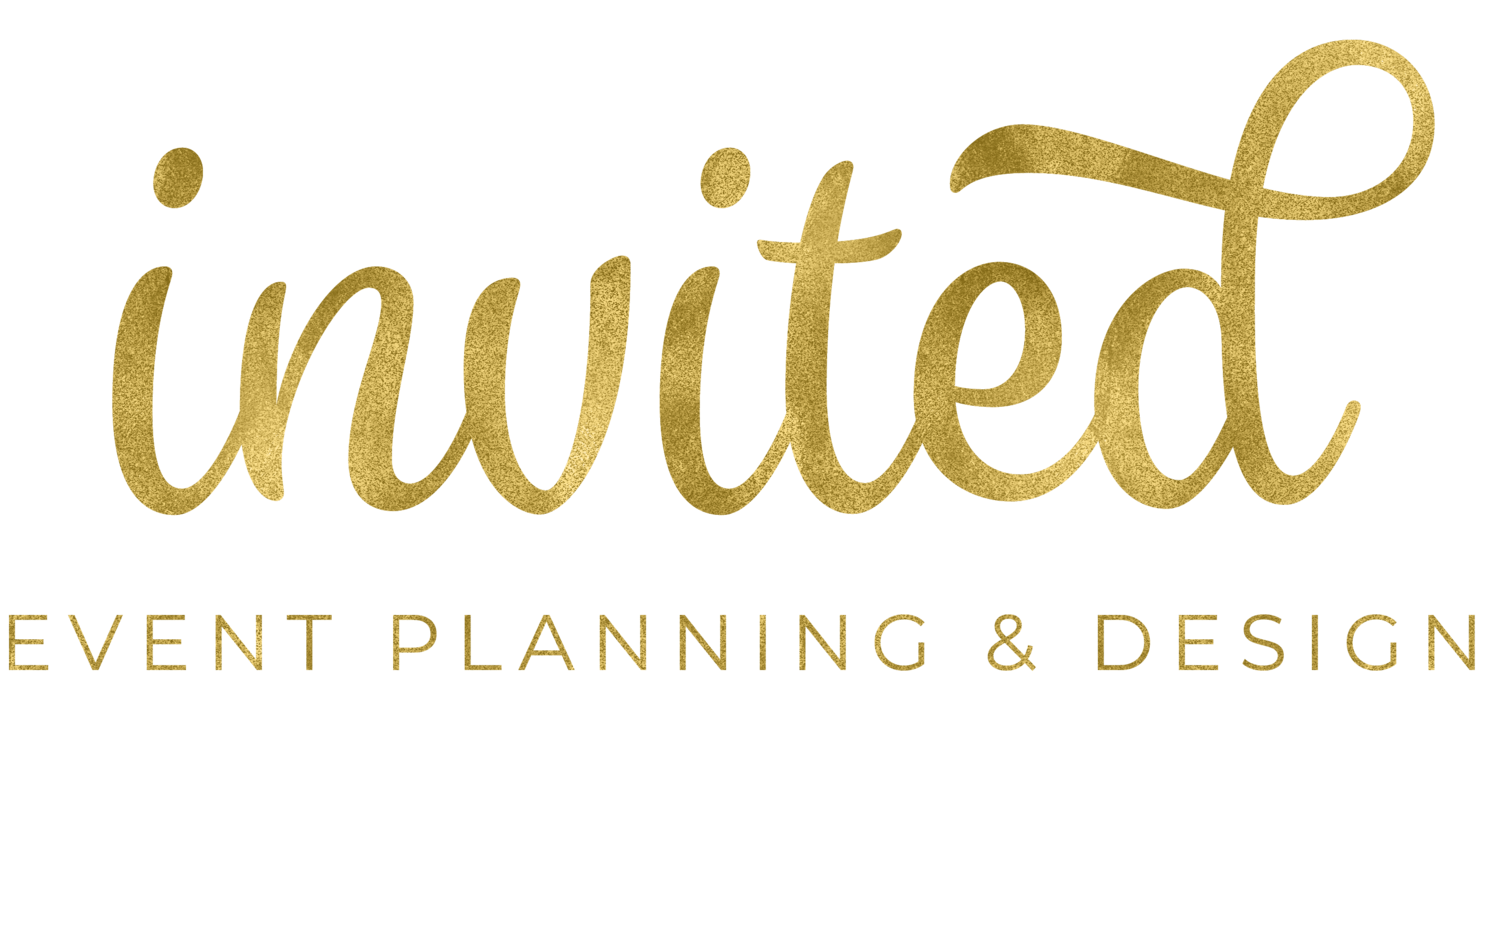 Invited Event Planning + Design 